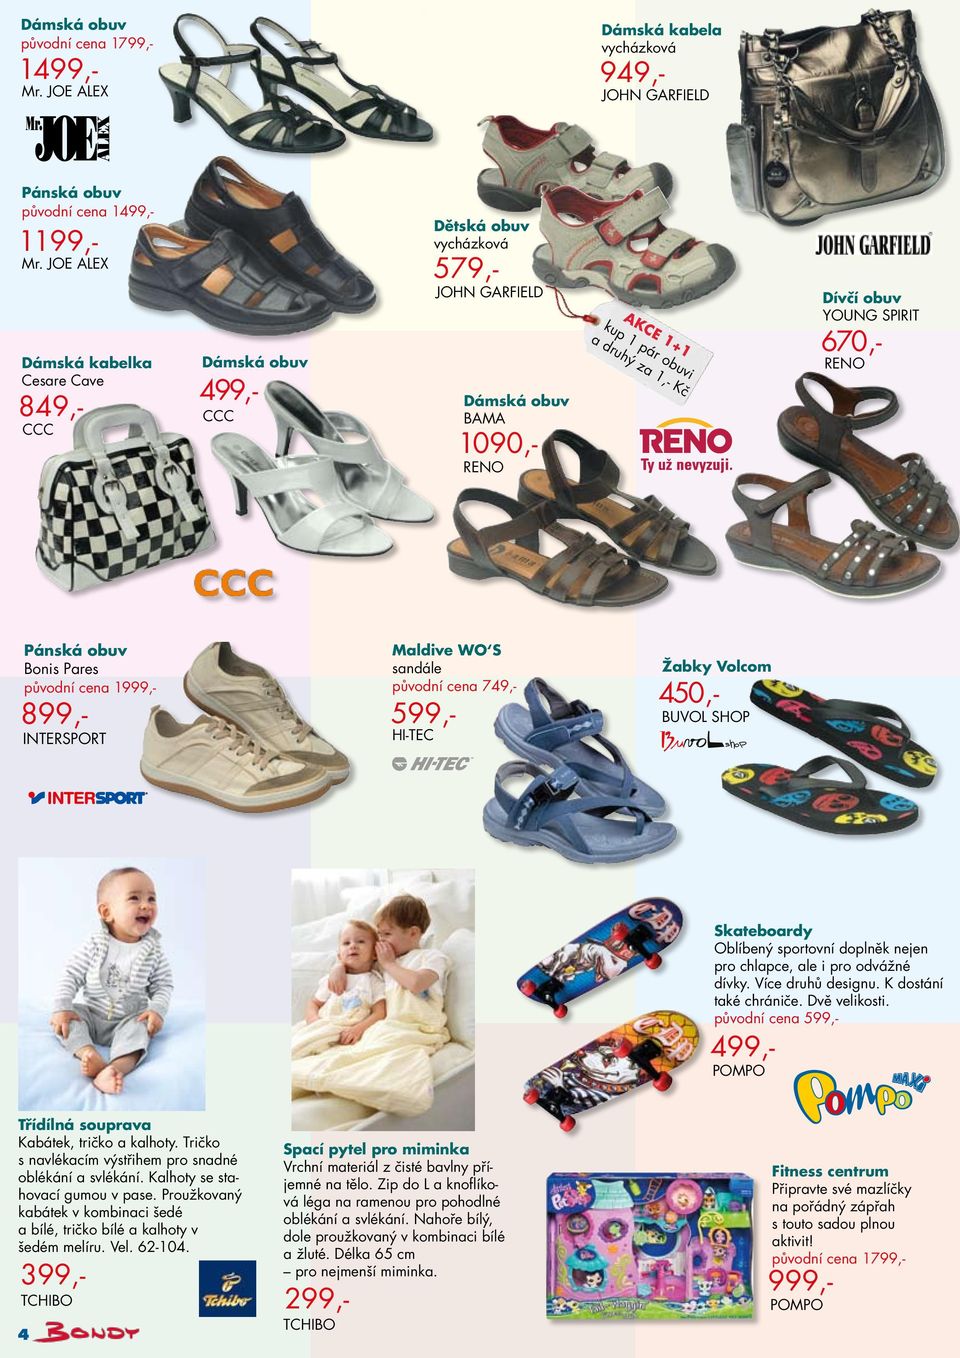 SPIRIT 670,- RENO Pánská obuv Bonis Pares původní cena 1999,- 899,- INTERSPORT Maldive WO S sandále původní cena 749,- 599,- HI-TEC Žabky Volcom 450,- BUVOL SHOP Skateboardy Oblíbený sportovní